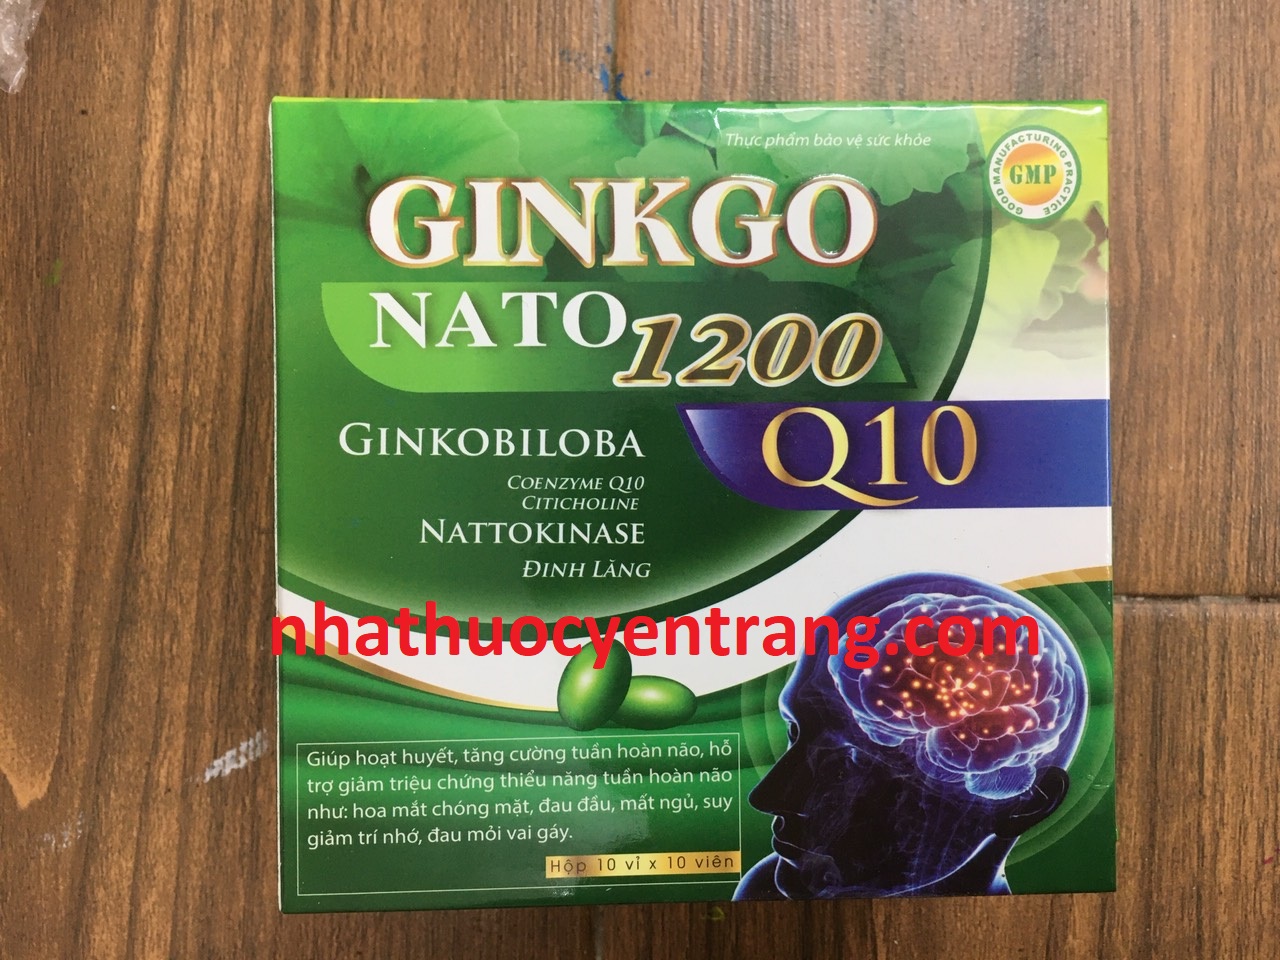 Ginkgo Nato 1200 Q10